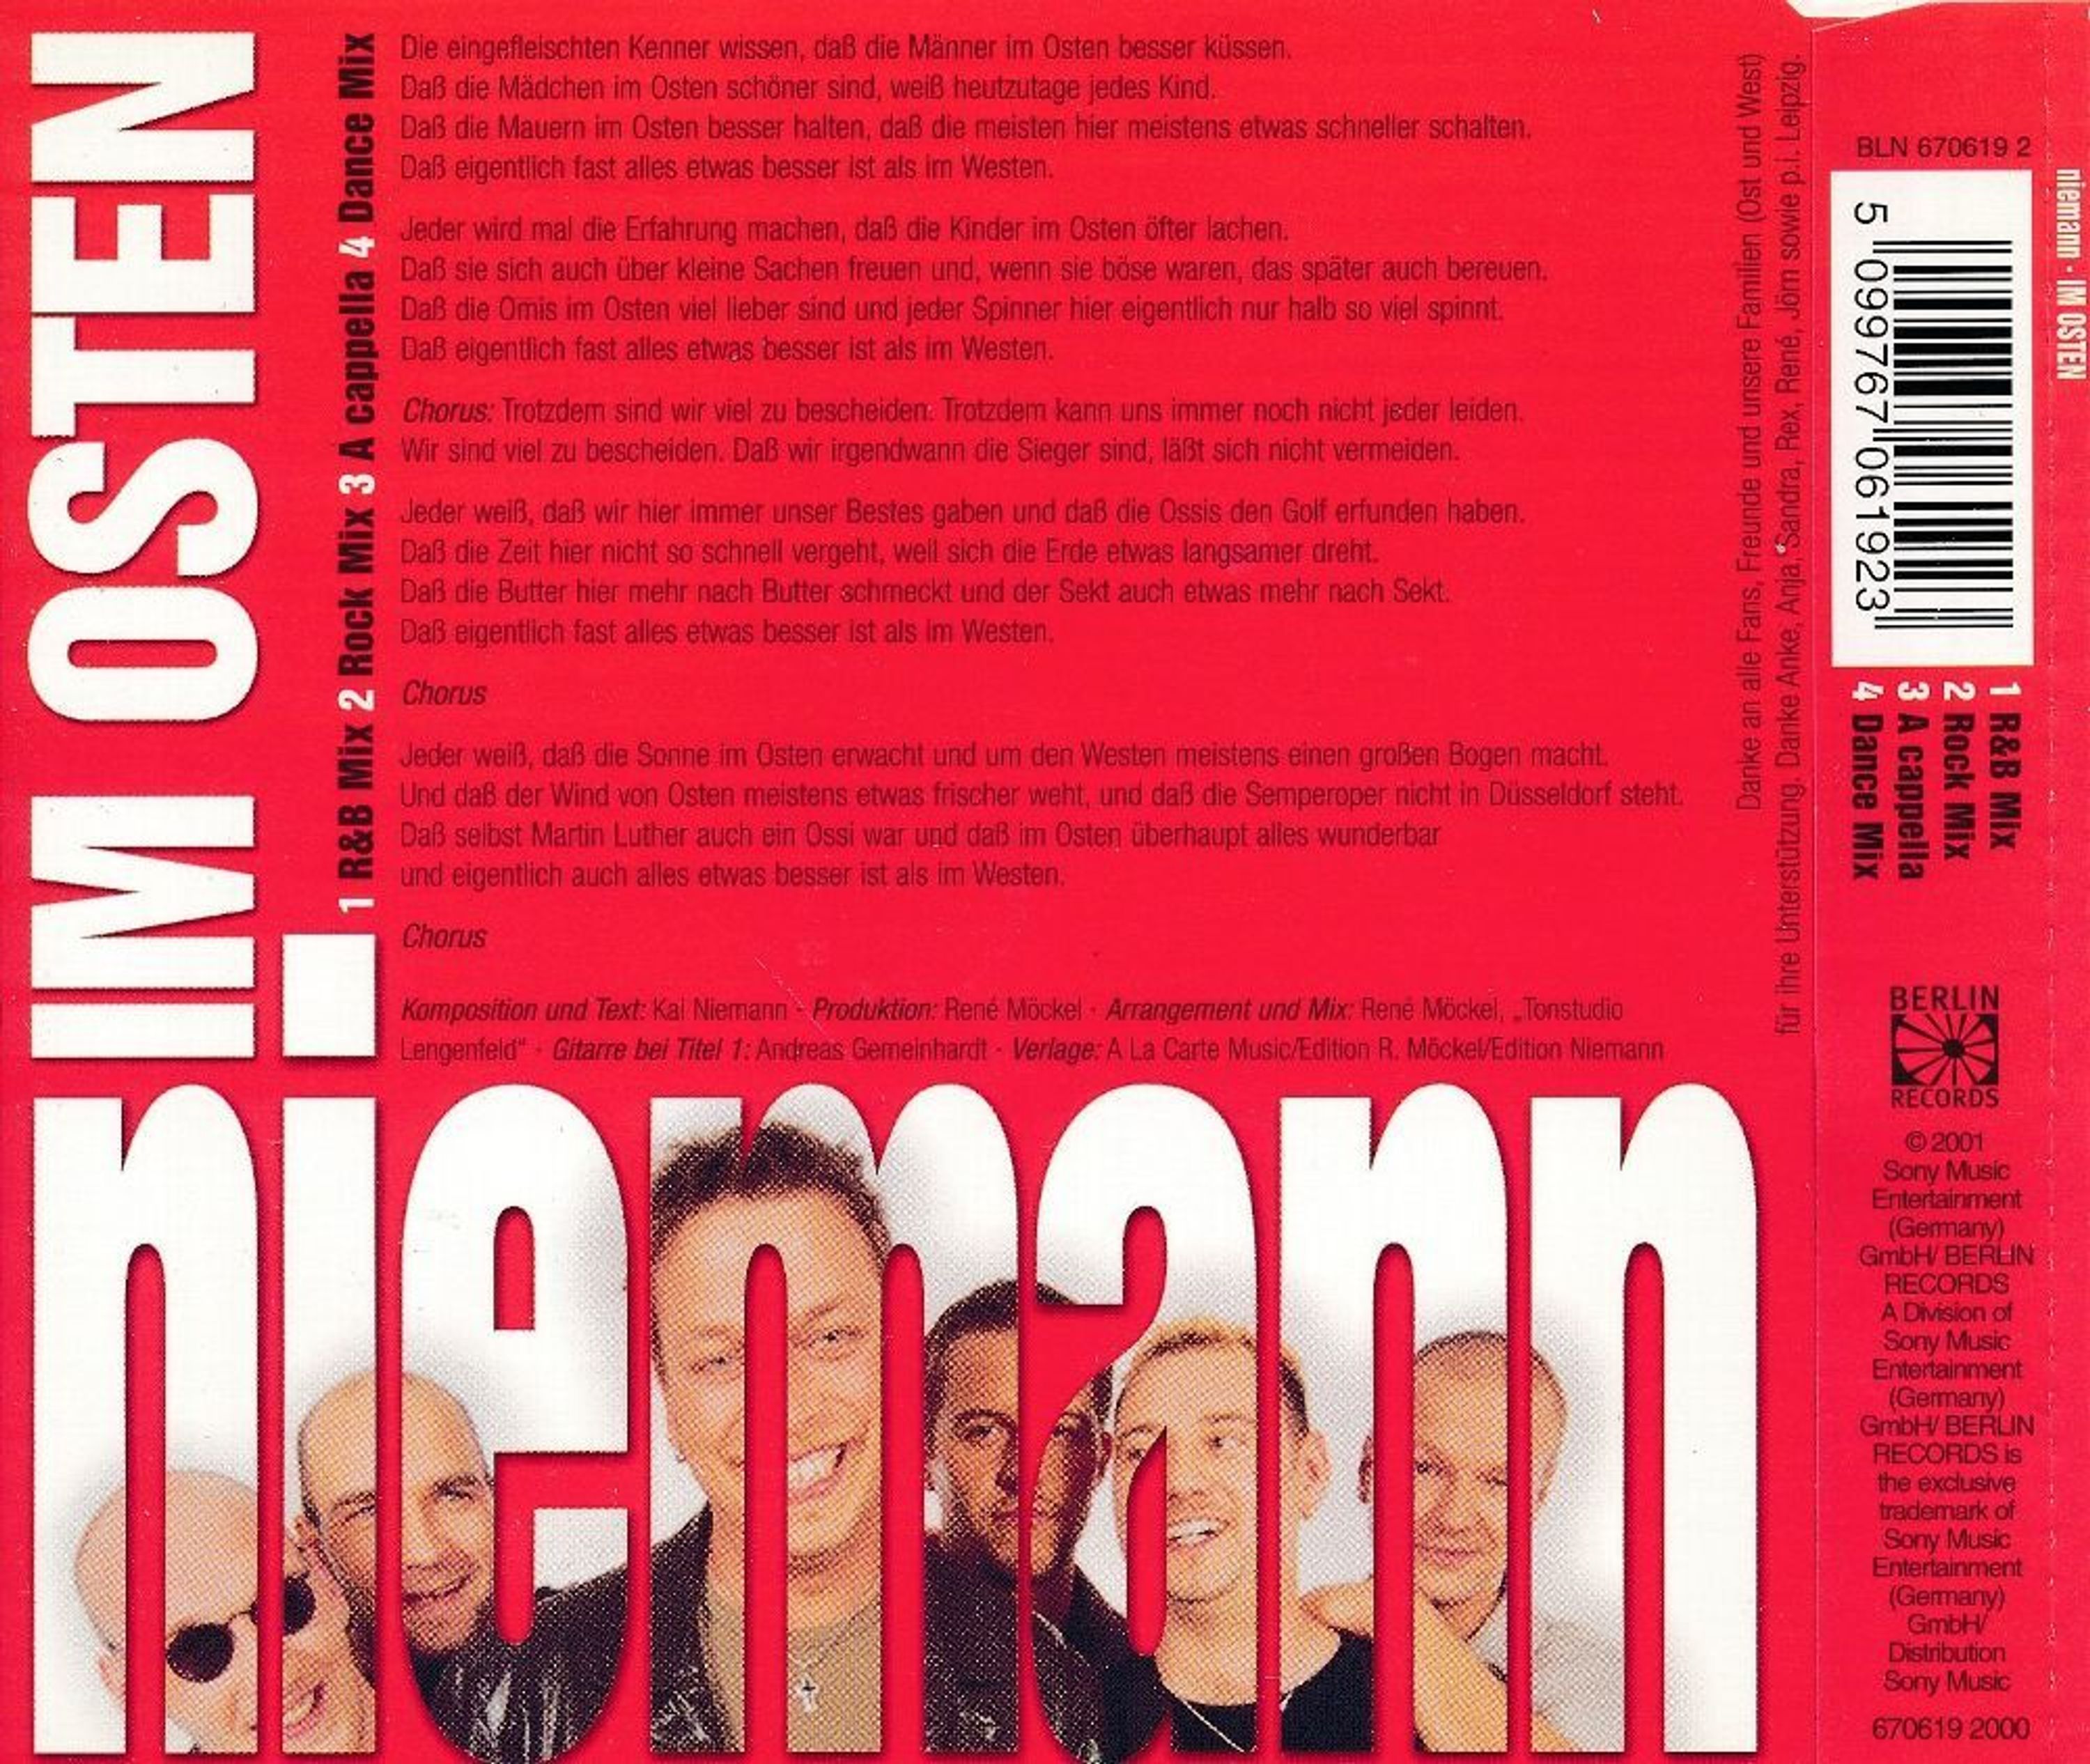 Maxi CD Cover Niemann - Im Osten kaufen bei Hood.de